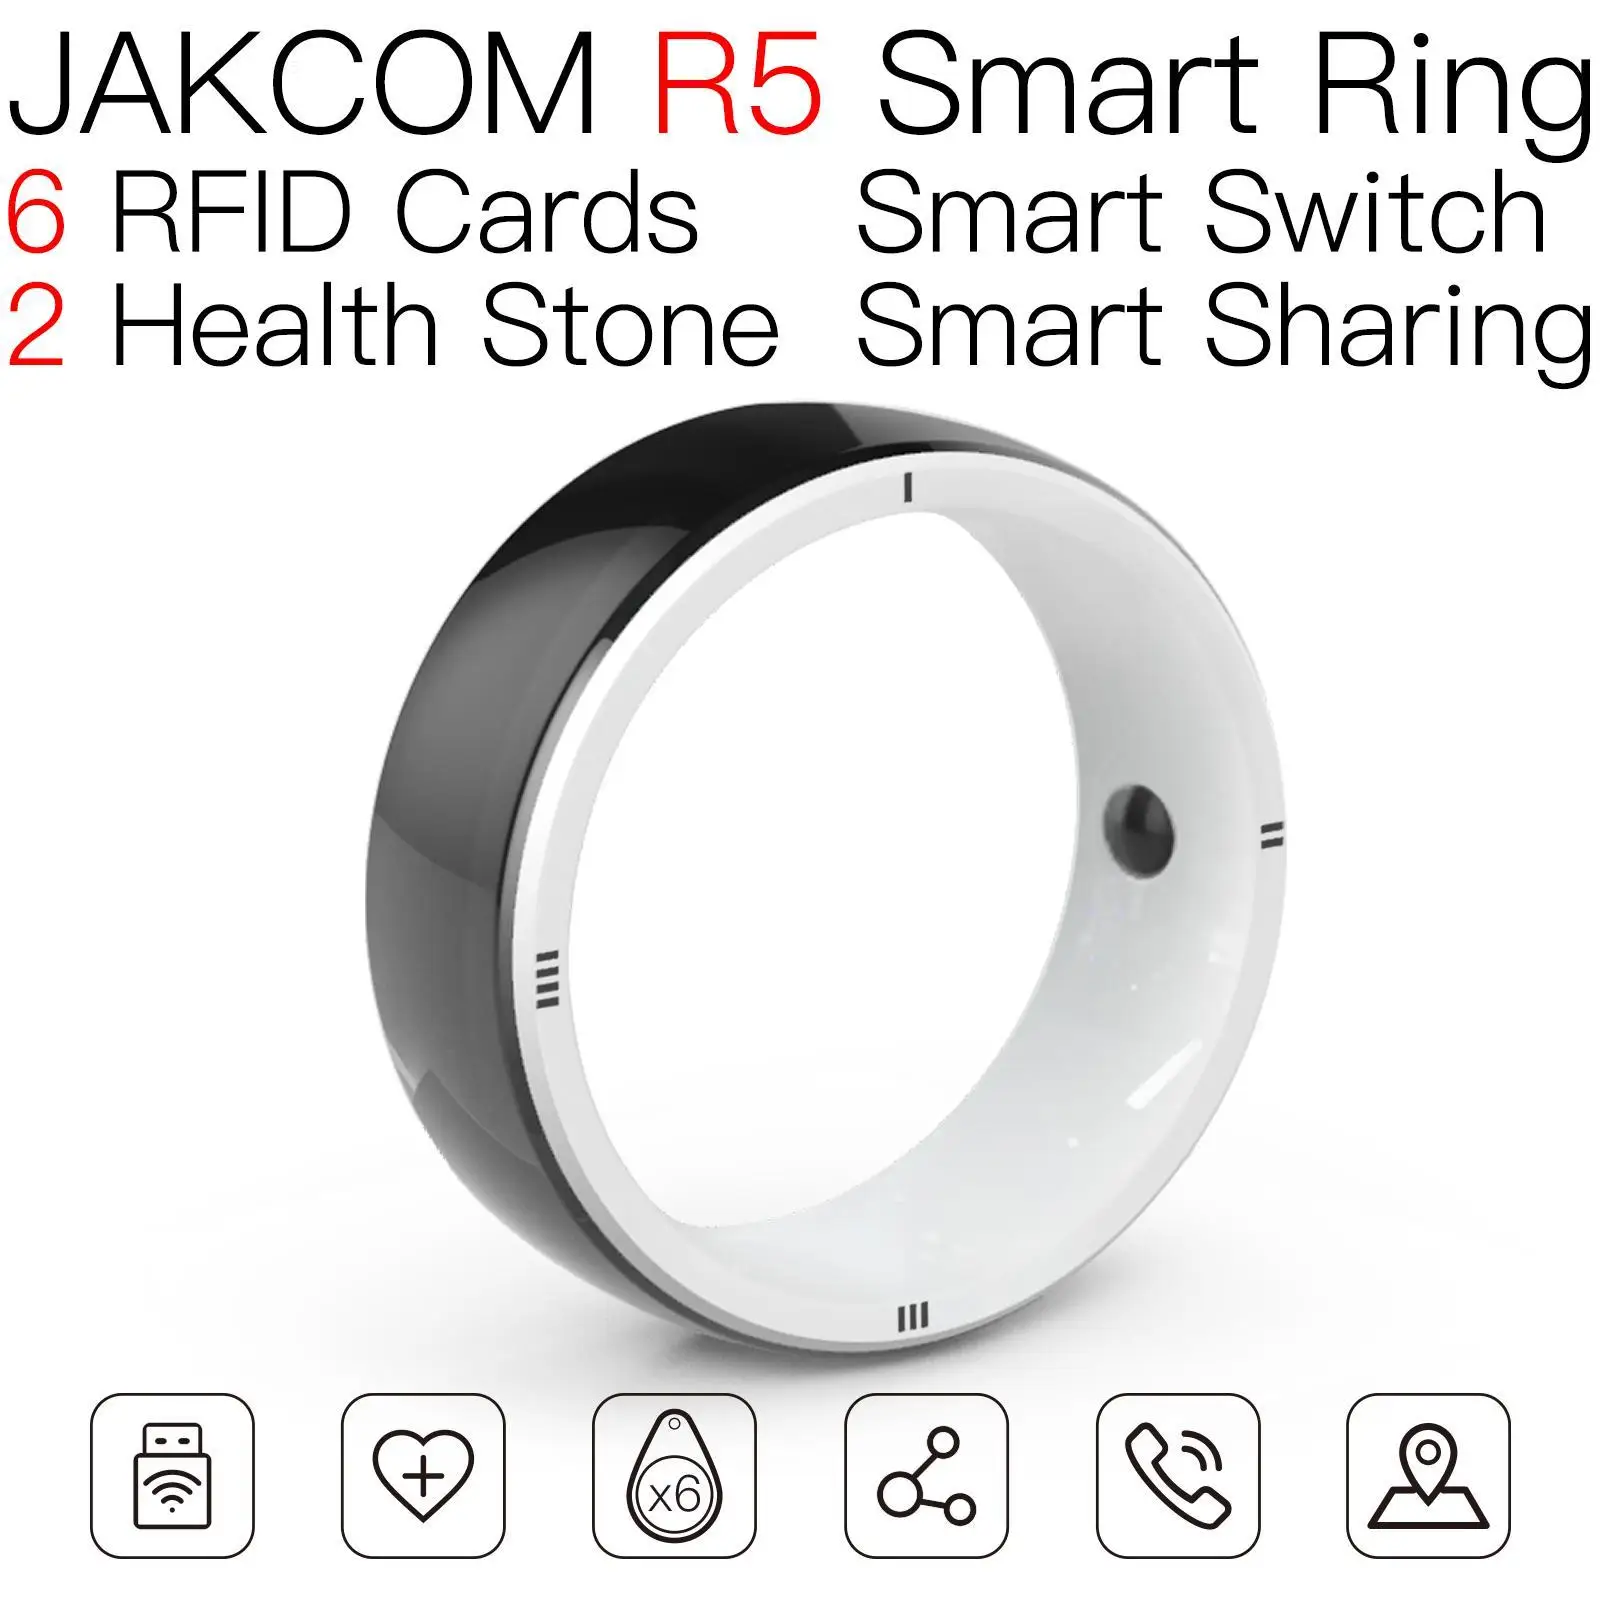 

Смарт-кольцо JAKCOM R5, новый продукт как rfid керамический магазин tarf, Испанская версия, nfc-метка, сканер, считыватель, записывающее устройство, карты acnh